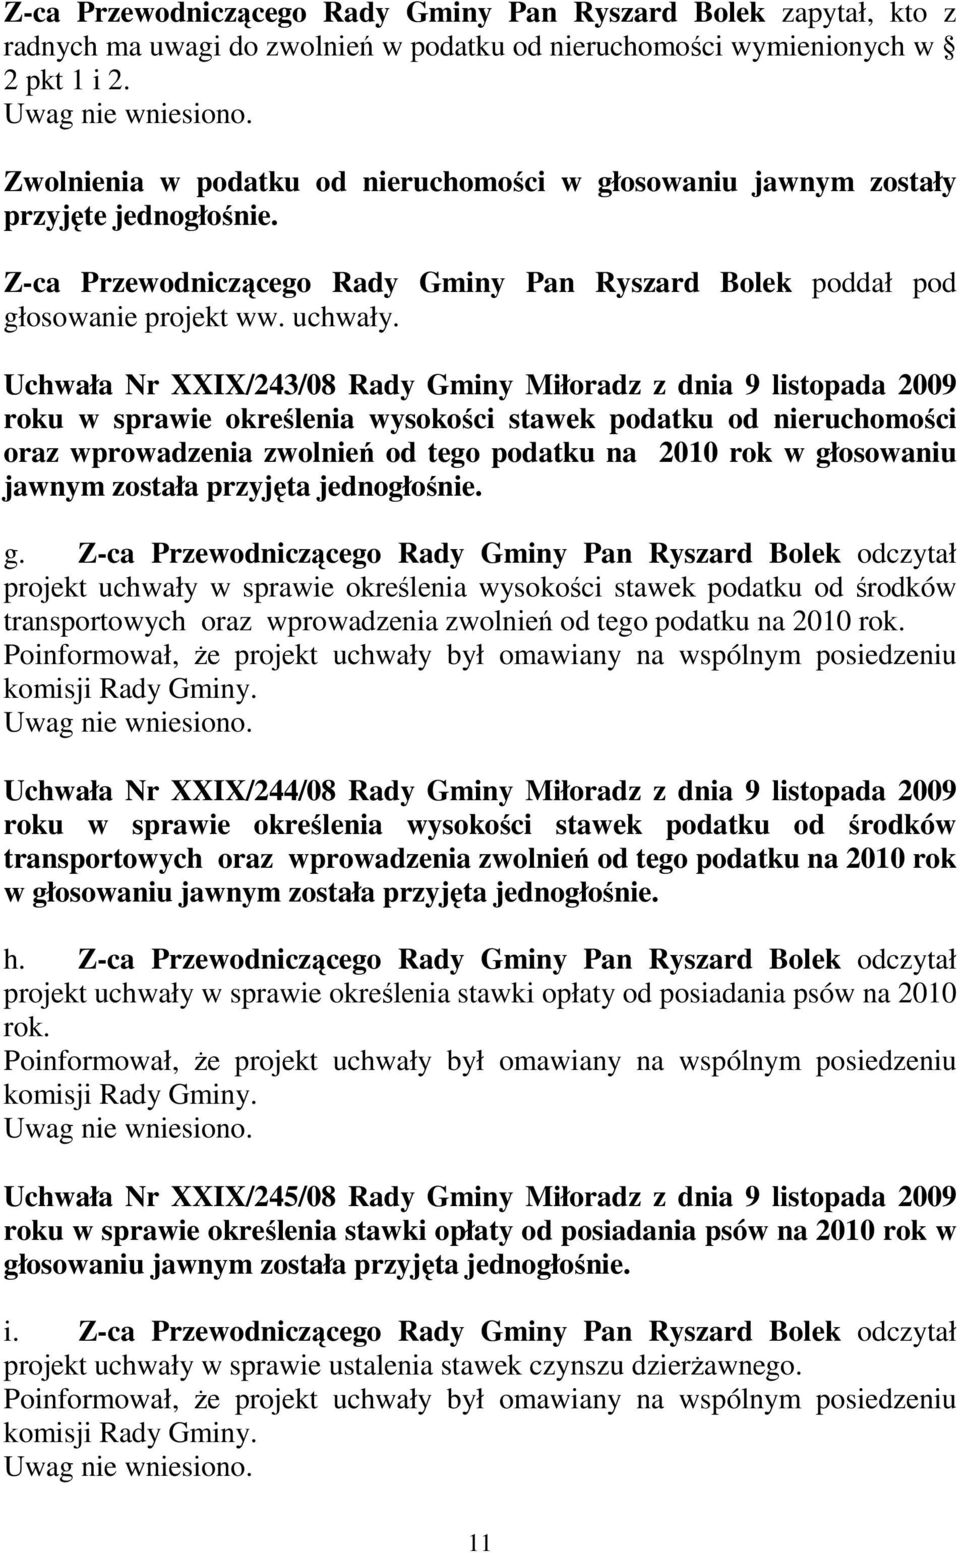 Uchwała Nr XXIX/243/08 Rady Gminy Miłoradz z dnia 9 listopada 2009 roku w sprawie określenia wysokości stawek podatku od nieruchomości oraz wprowadzenia zwolnień od tego podatku na 2010 rok w